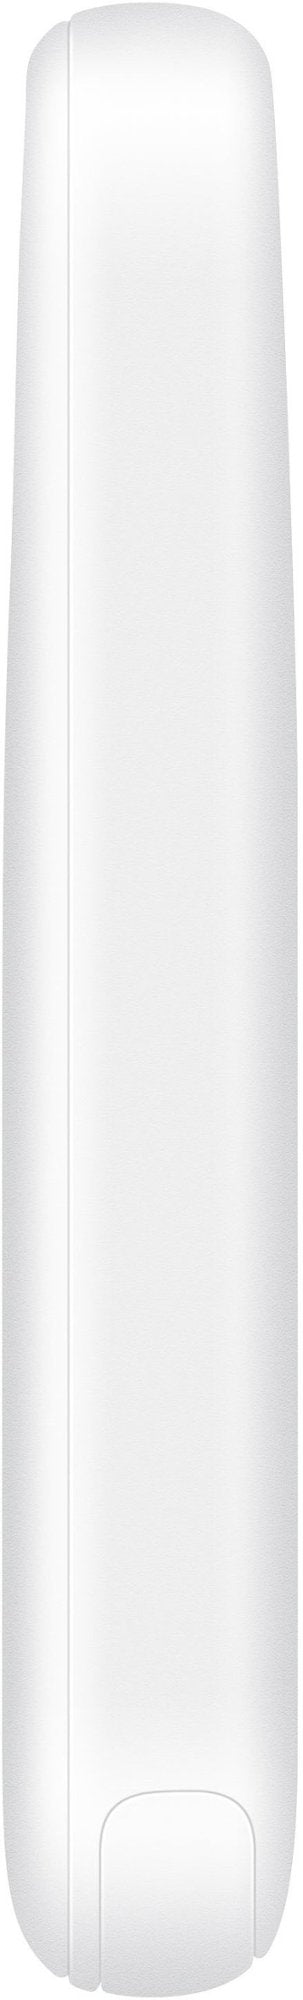 Samsung Galaxy SmartTag2 (1pack) (EI-T5600BBEGUS) - White (New)